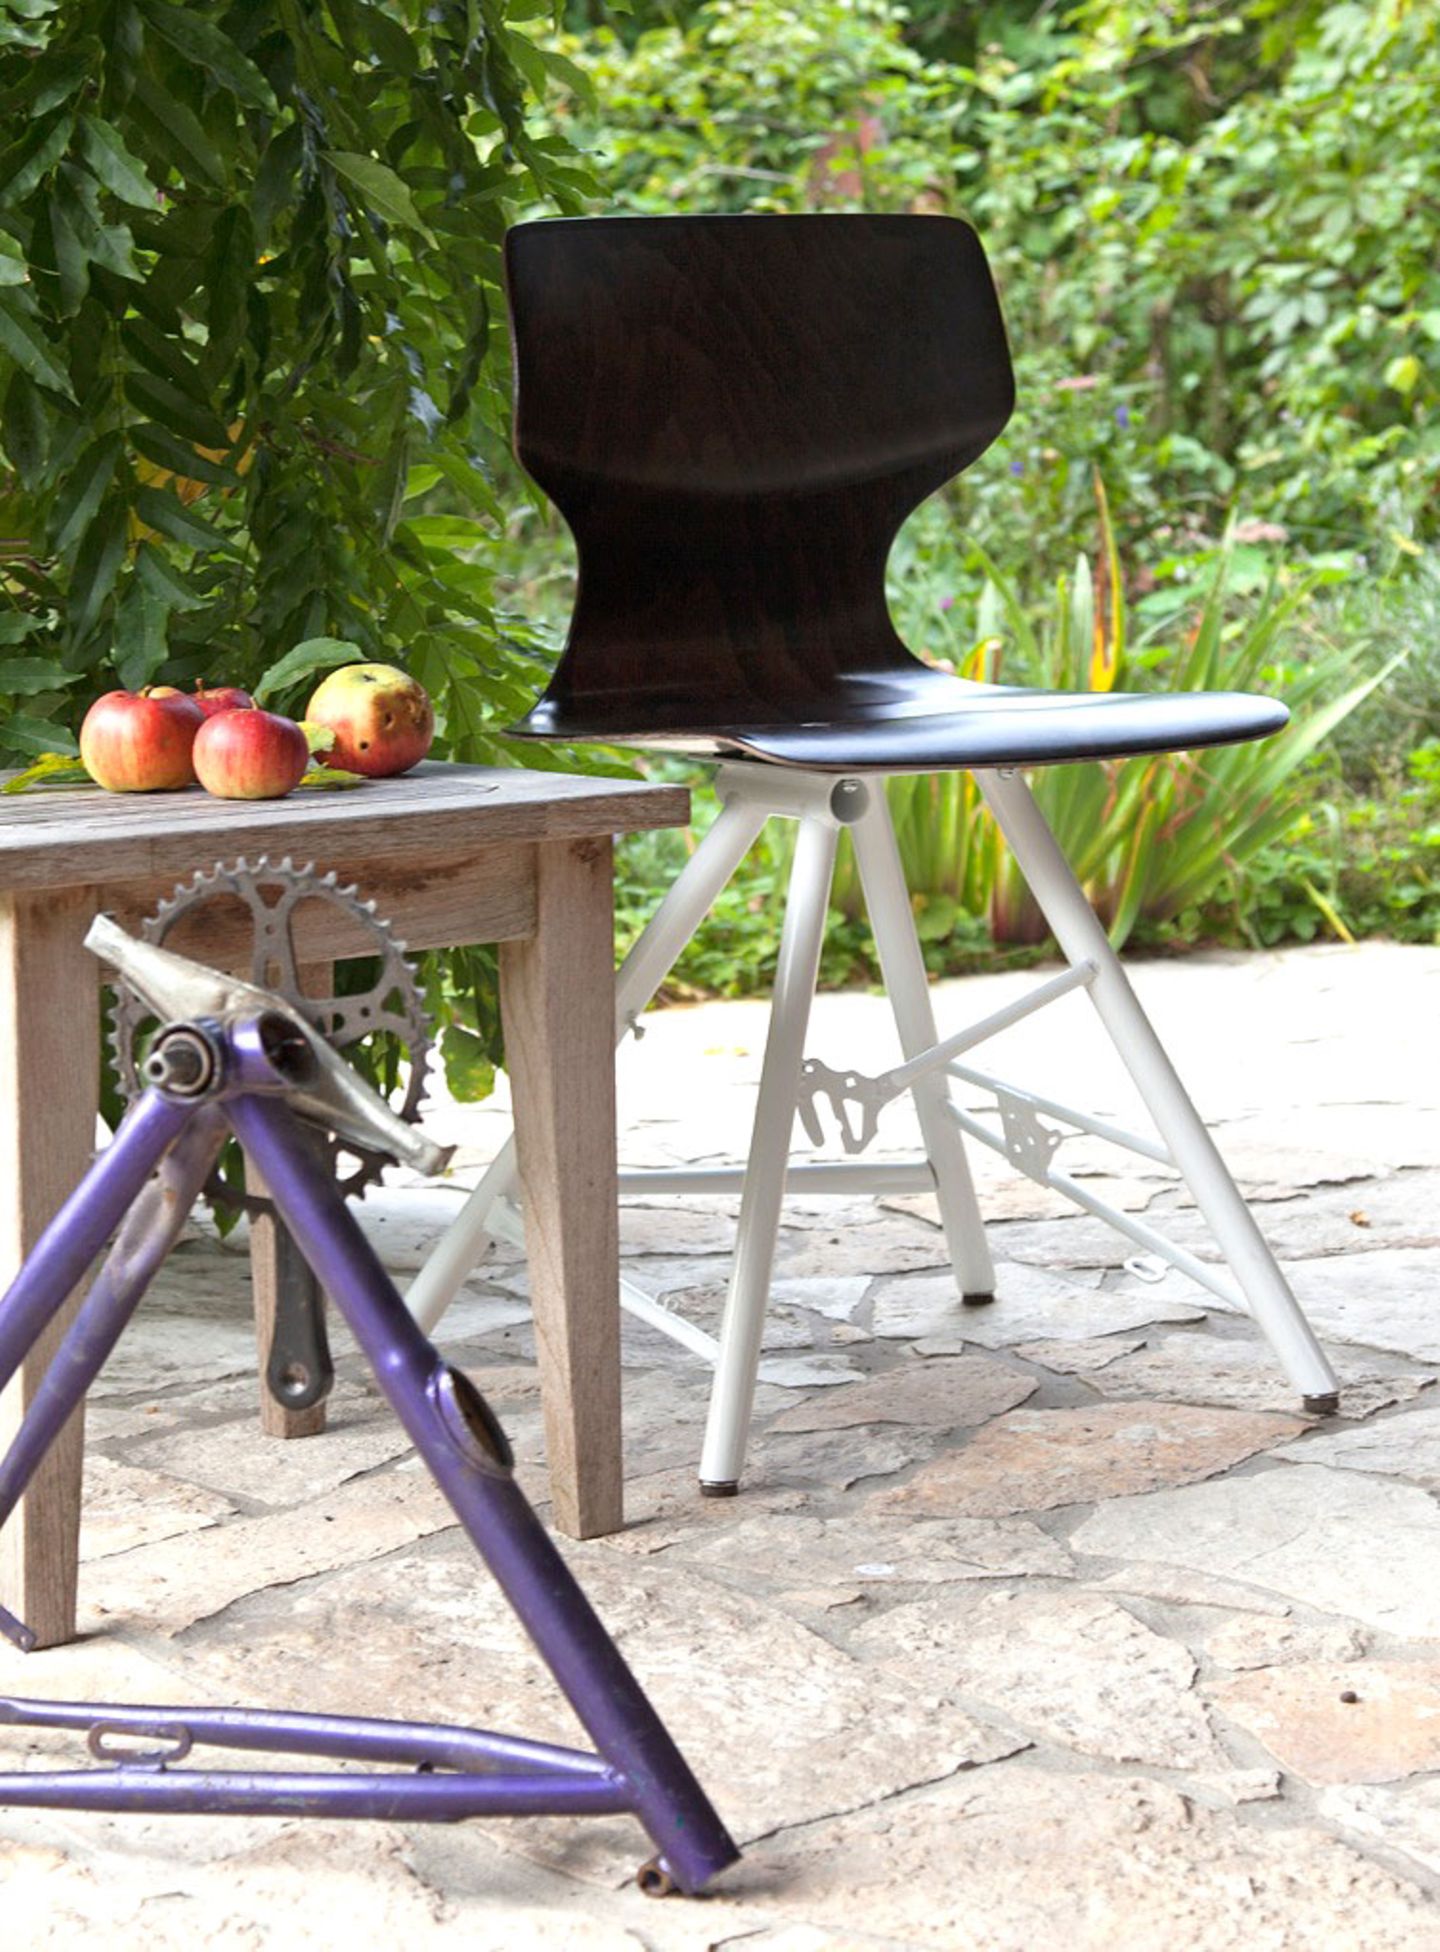 Stuhl "Eddi" von Formsitz Design mit einem Untergestell aus einem alten Fahrradrahmen